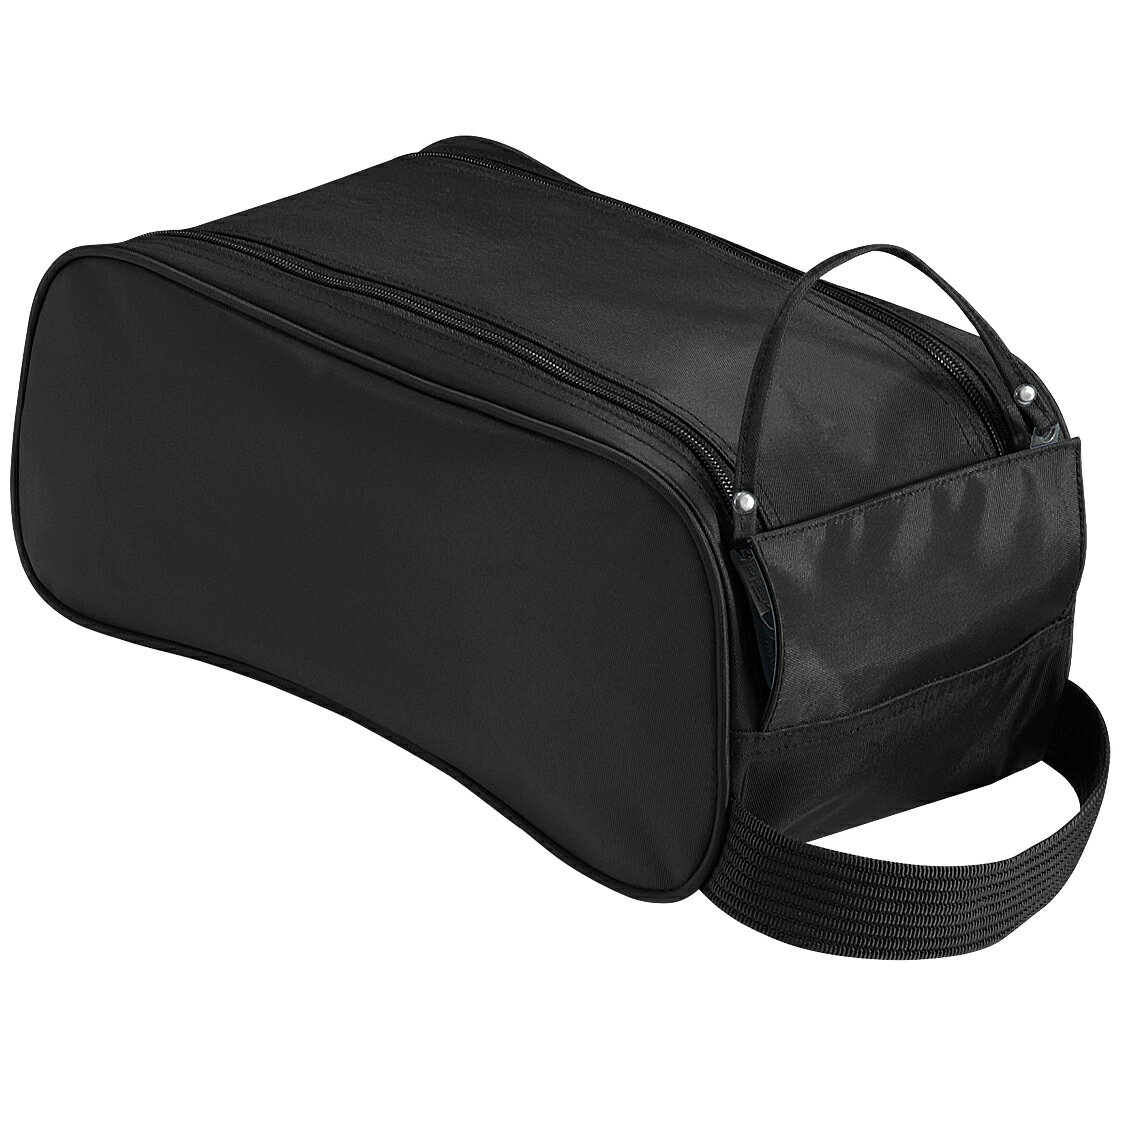 商品説明・ 携帯に便利なシューズ用バッグ/かばん。・ 持ち手つき。・ 布で拭いてお手入れしてください。・ 重量:約260g。・ 素材:420Dポリエステル。・ サイズ:約35H x 18W x 16D cm。・ 容量:約9リットル。 カラーブラックブルー/ブラック/ホワイトレッド/ブラック/ホワイトネイビー 13/05/2024 / UTBC775